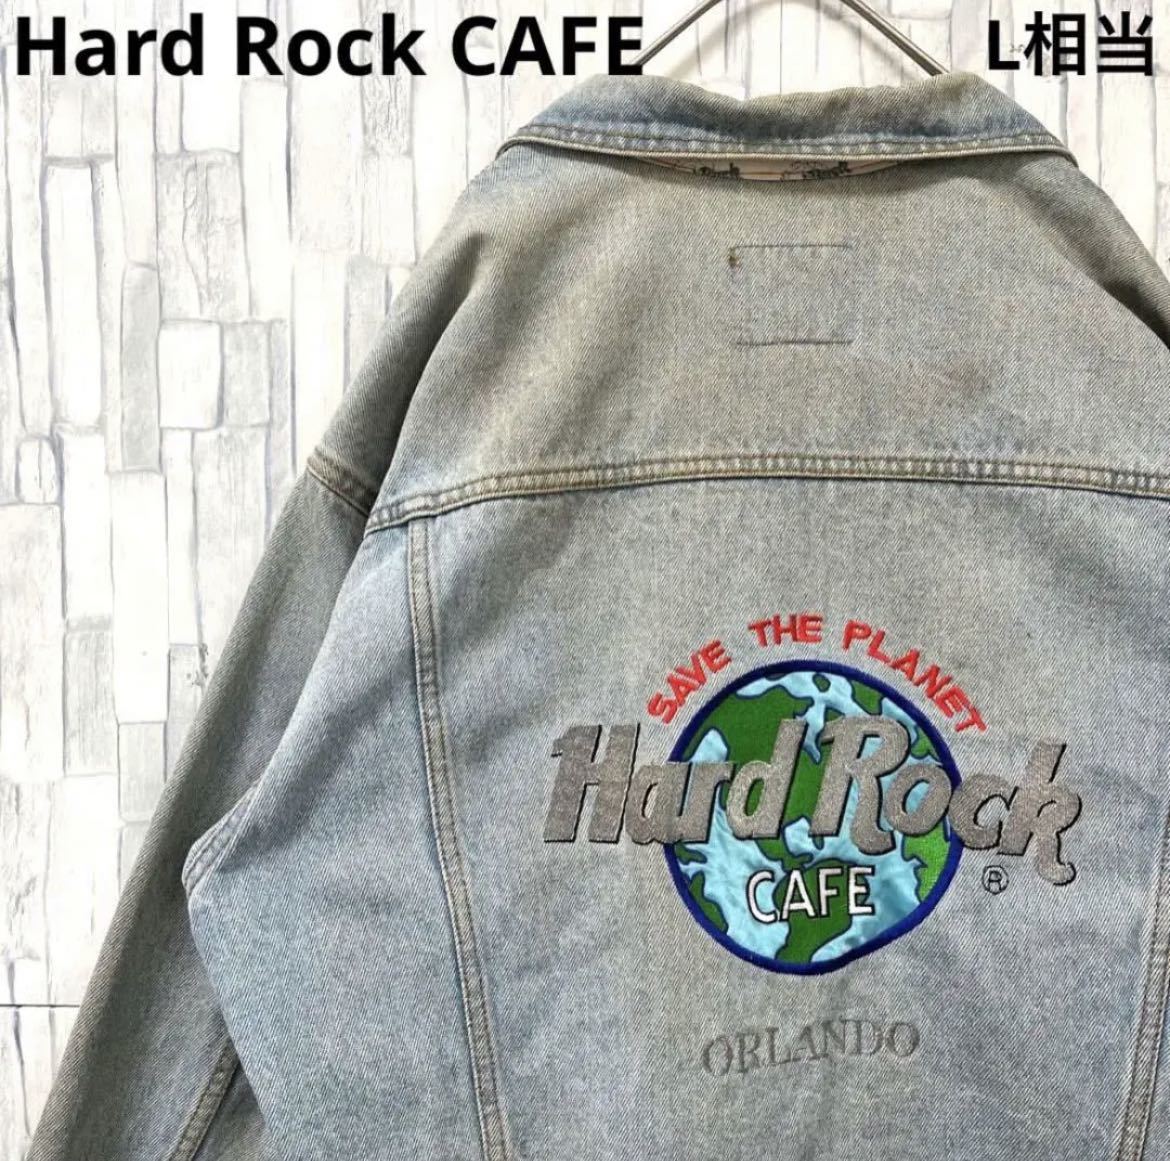 Hard Rock CAFE ハードロックカフェ デカロゴ 刺繍ロゴ ワッペン デニムジャケット Gジャン オーランド 送料無料